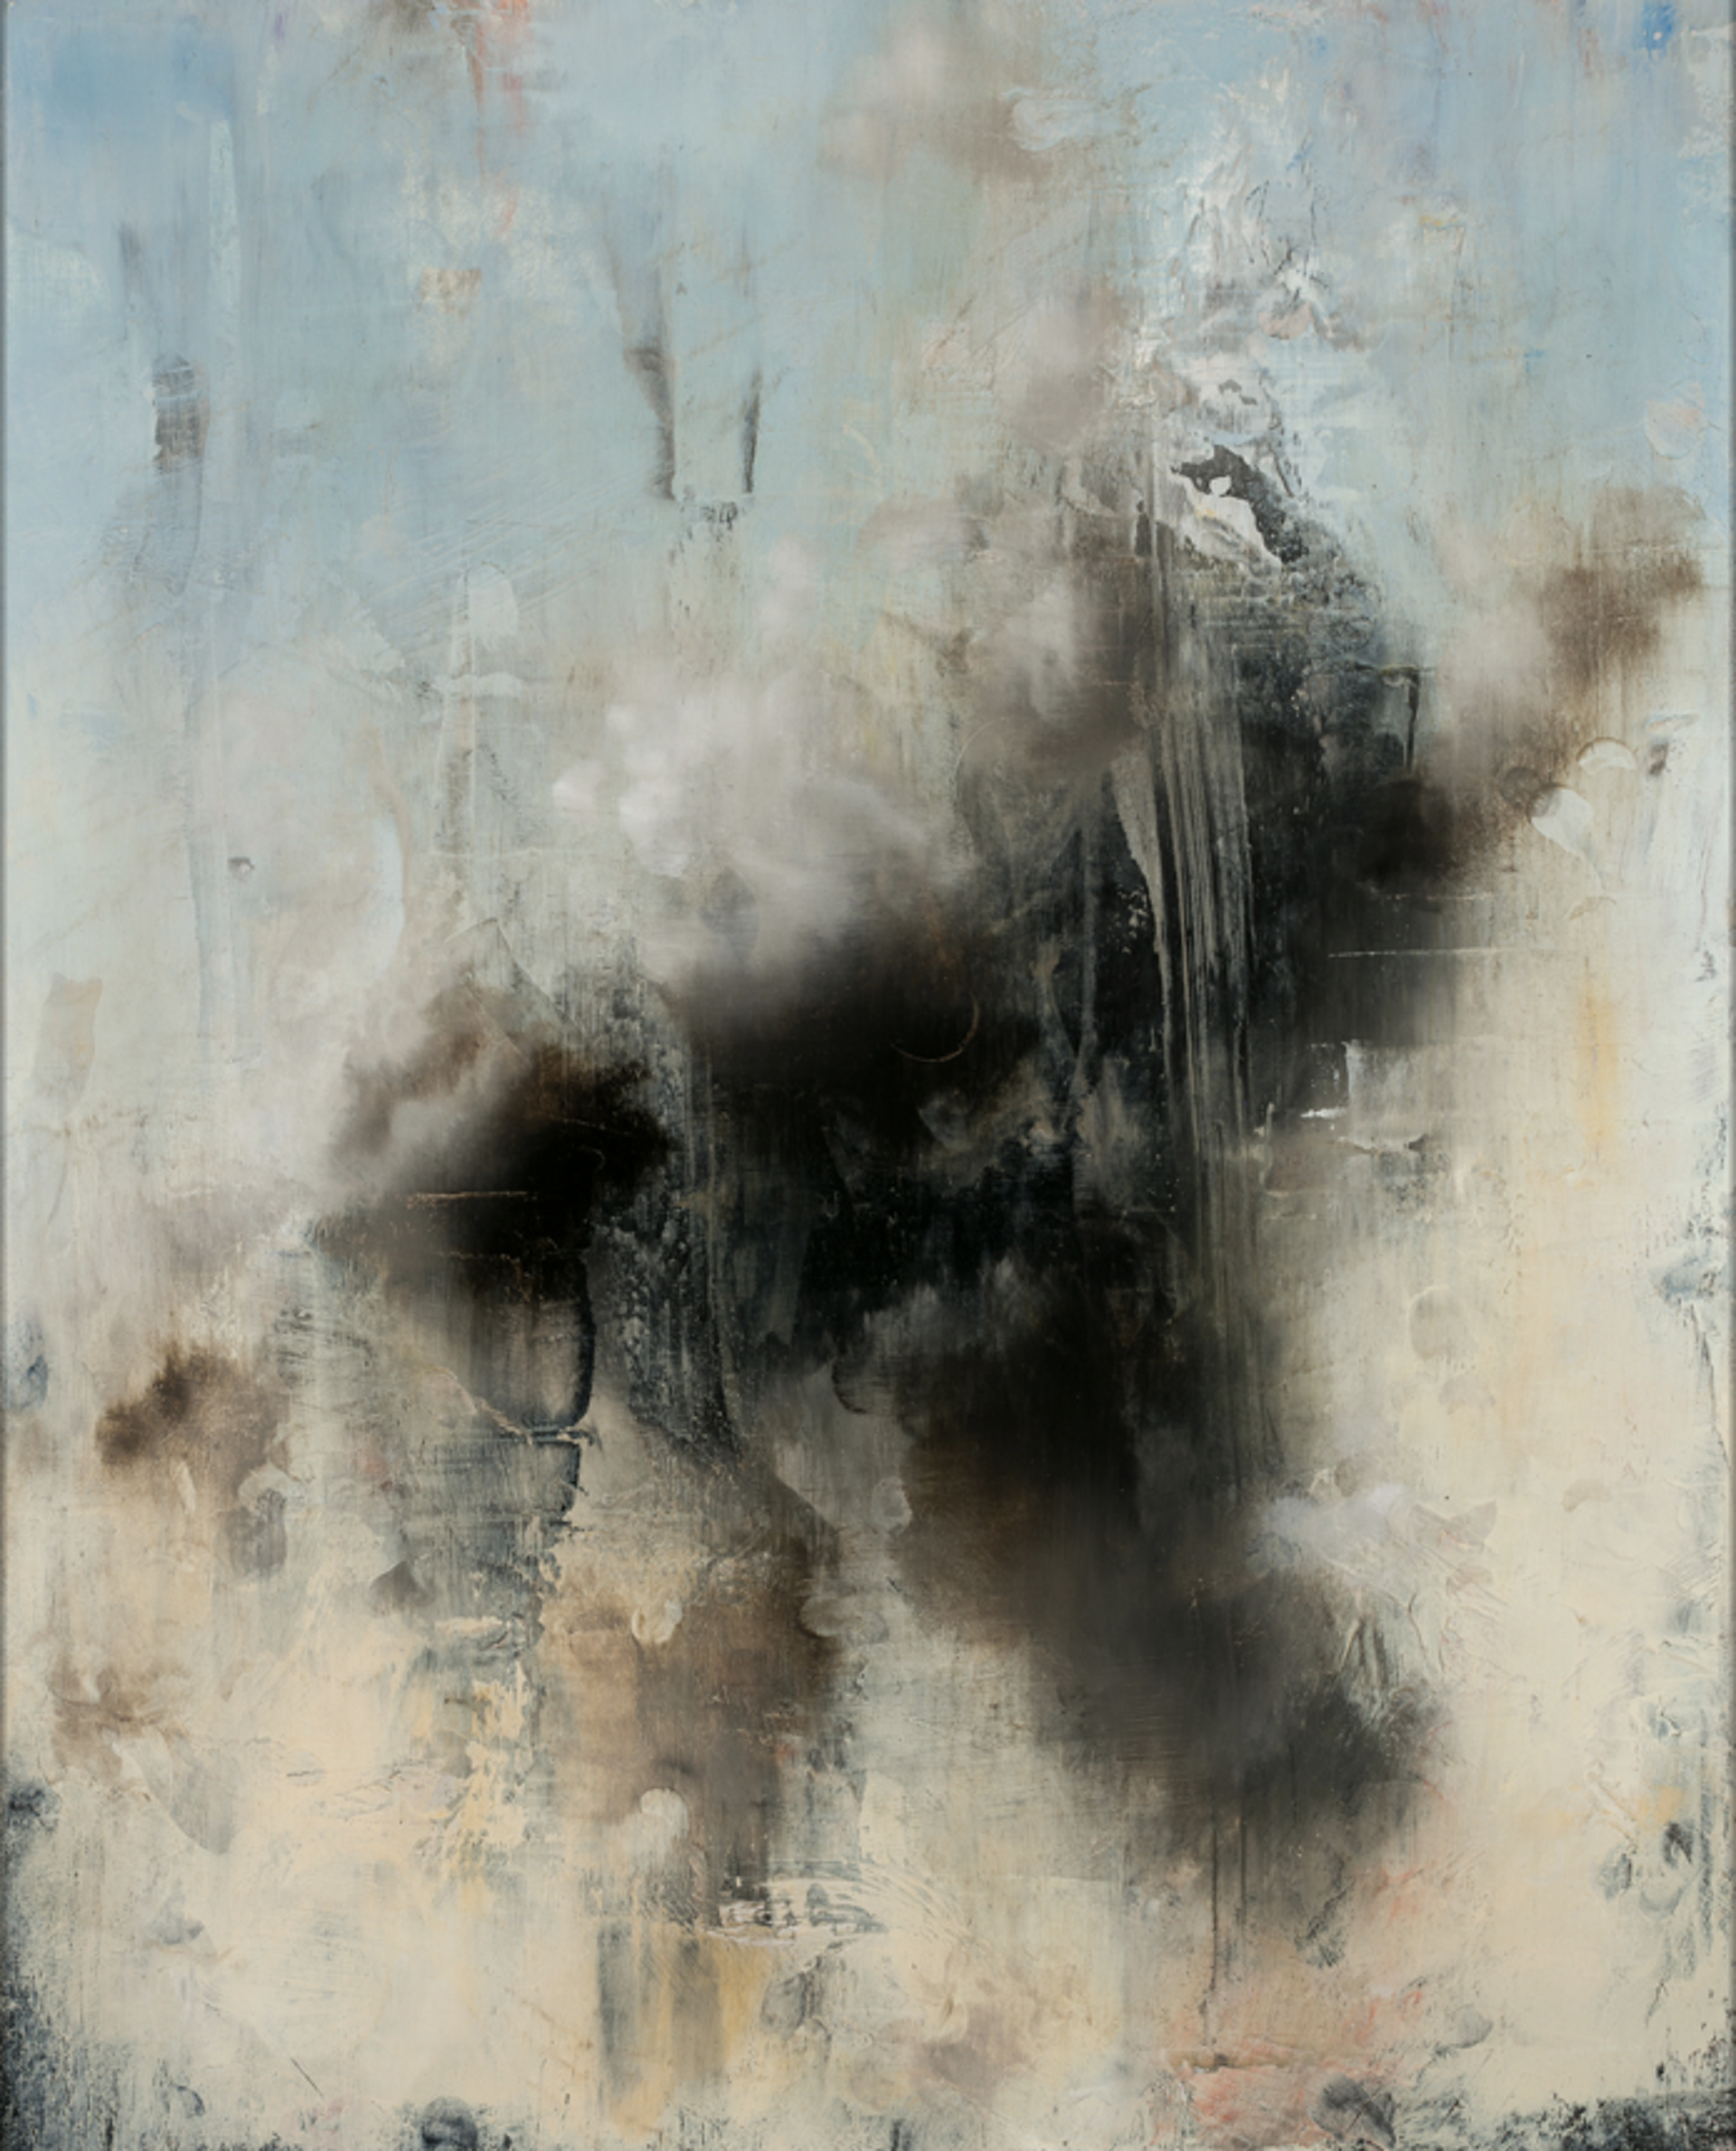 Black Cloud by Matthew Saba